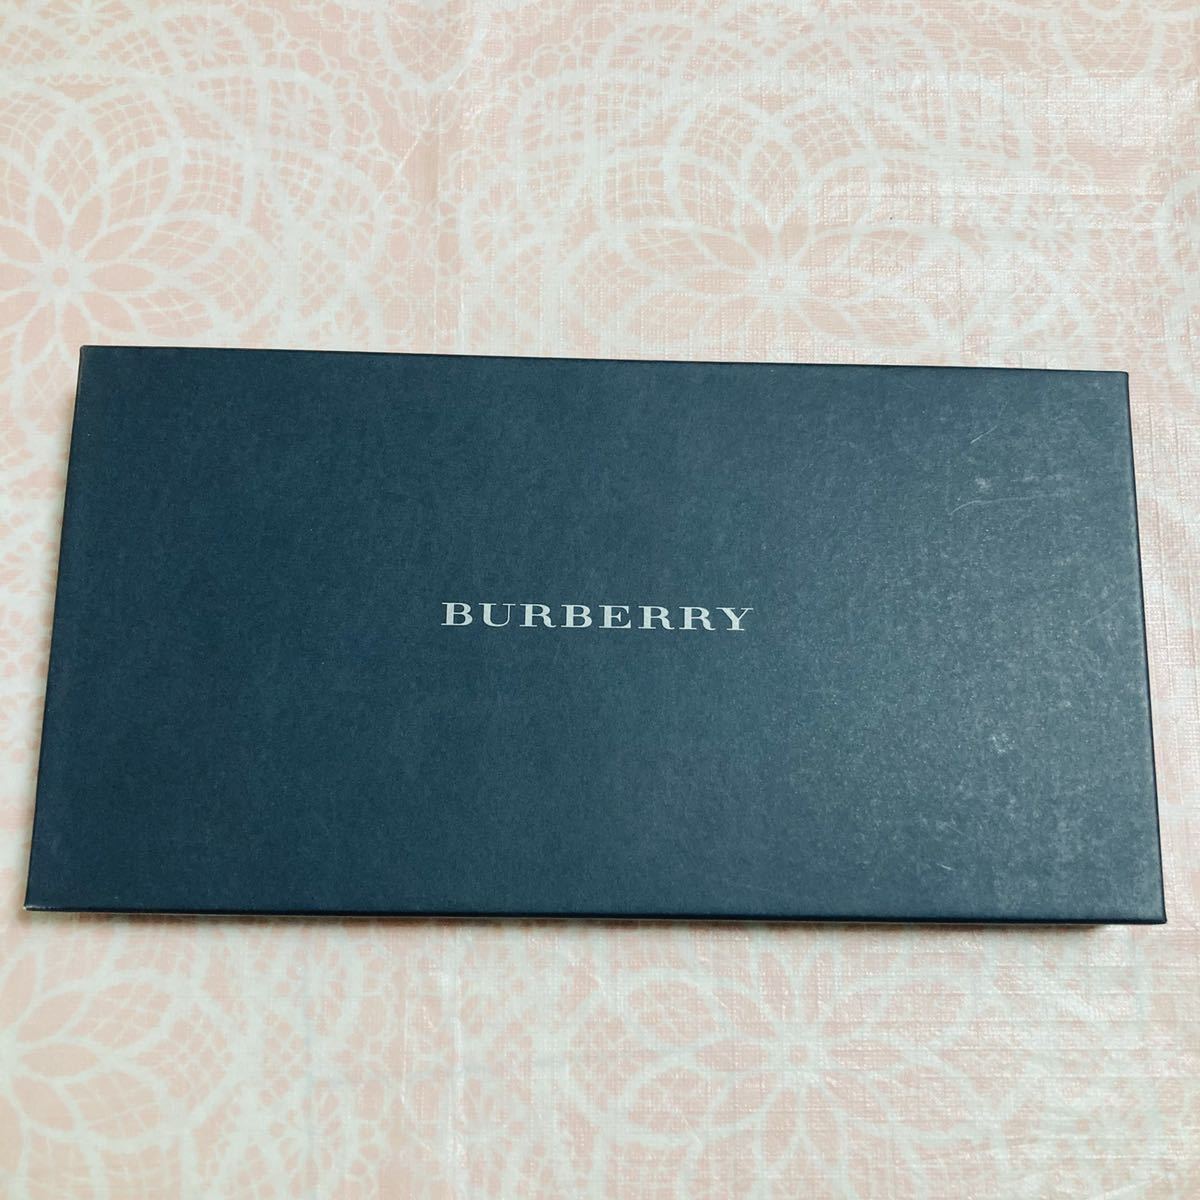 [ редкость ] новый товар /BURBERRY/ носовой платок / стандартный товар / Burberry /Burberrys/ хлопок 100%/noba проверка / не использовался / девочка / коробка есть / подарок / женский / женский /y